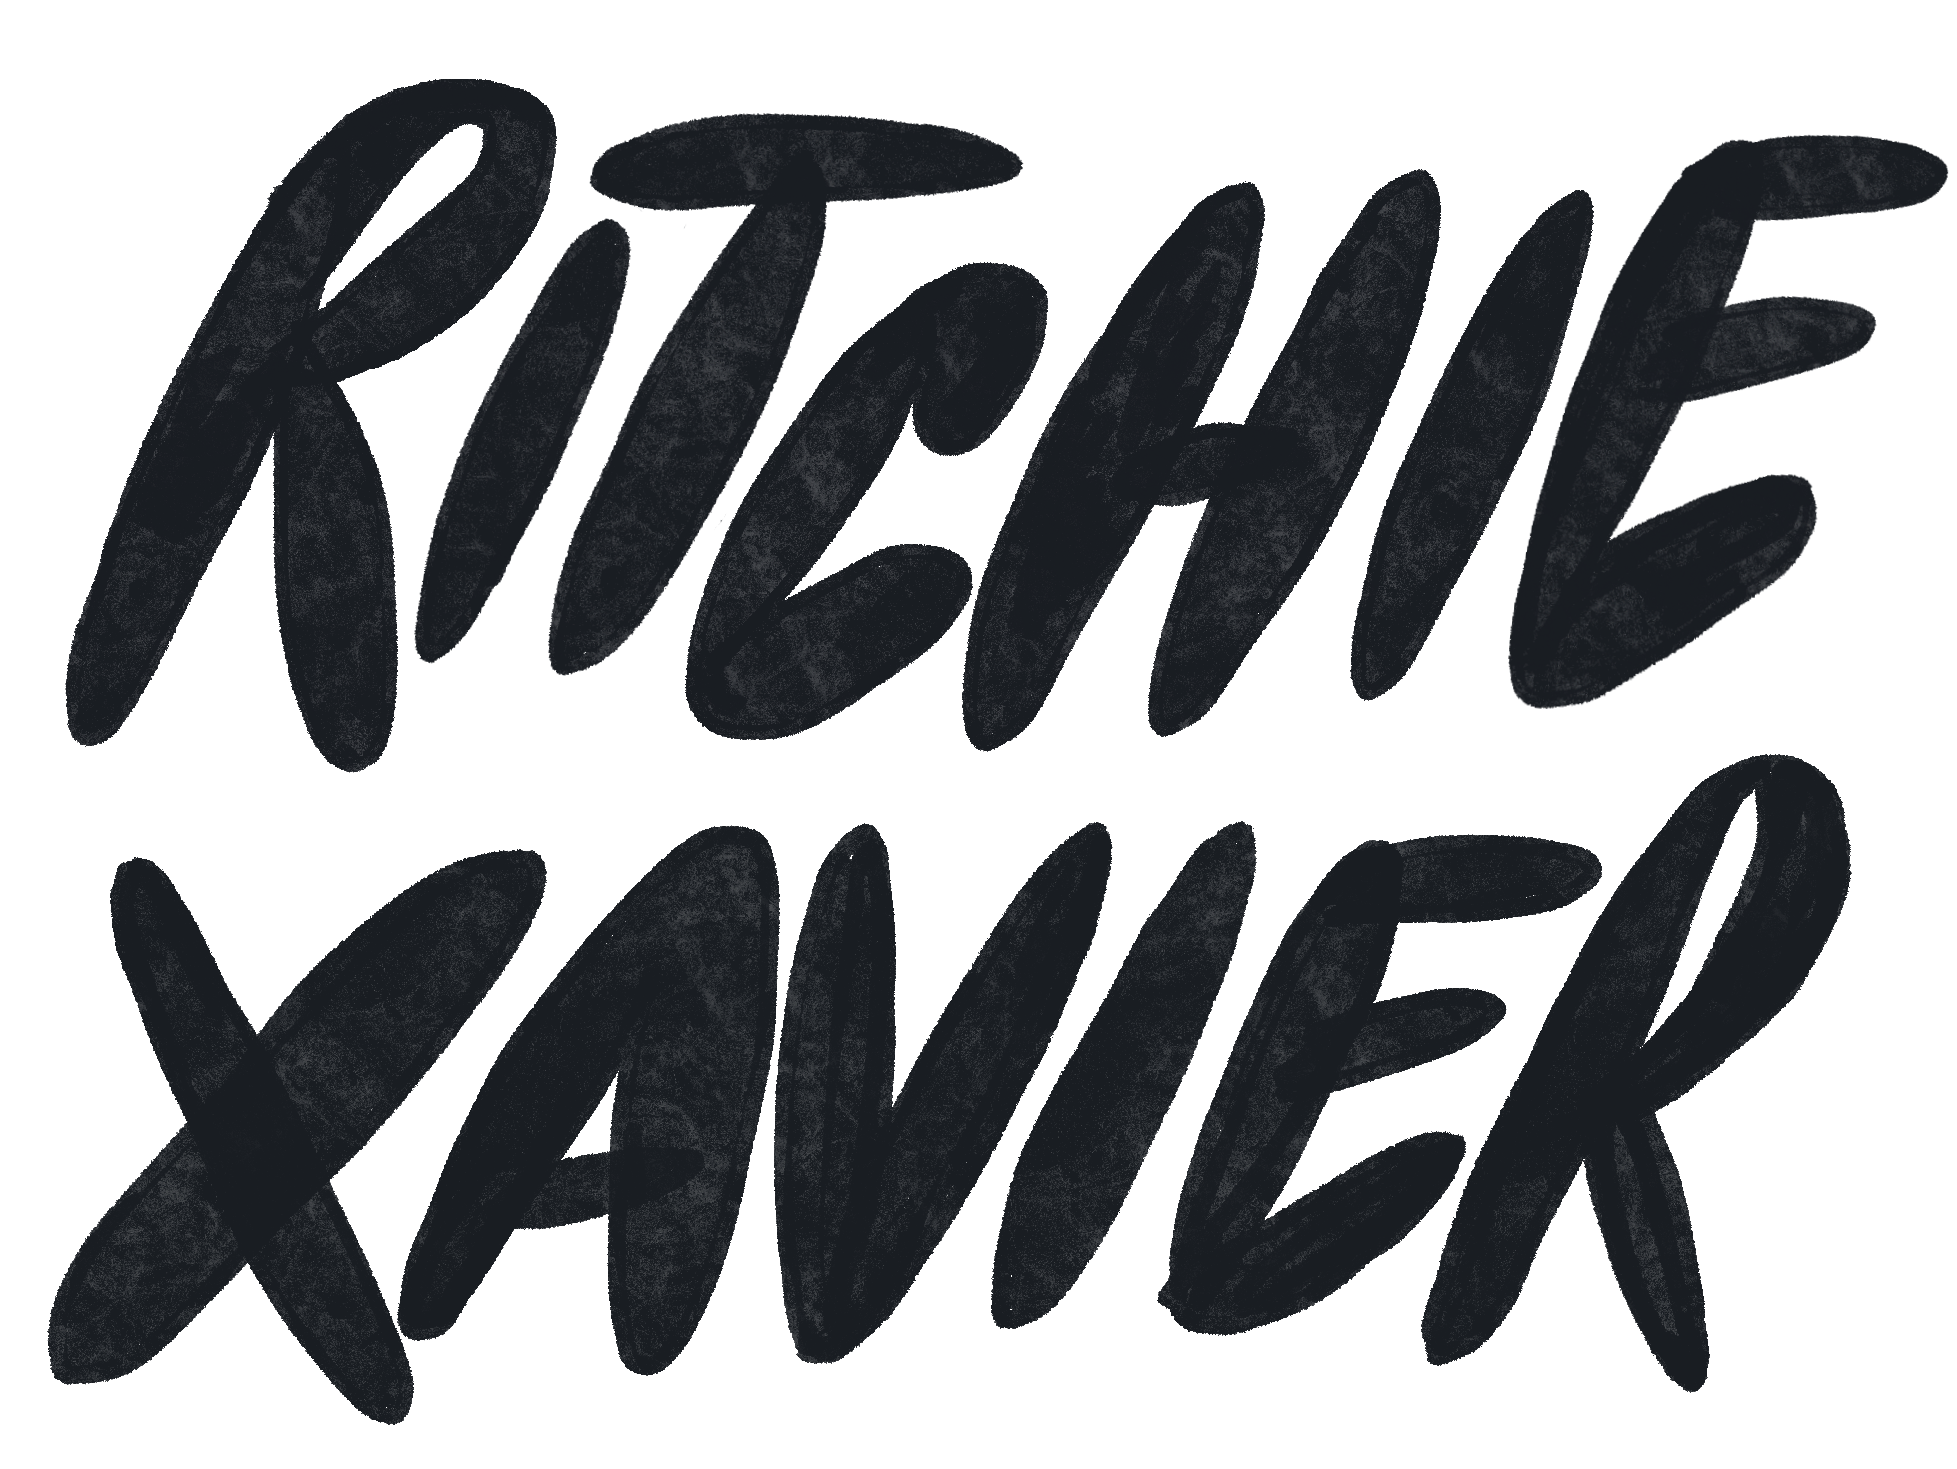 Ritchie Xavier